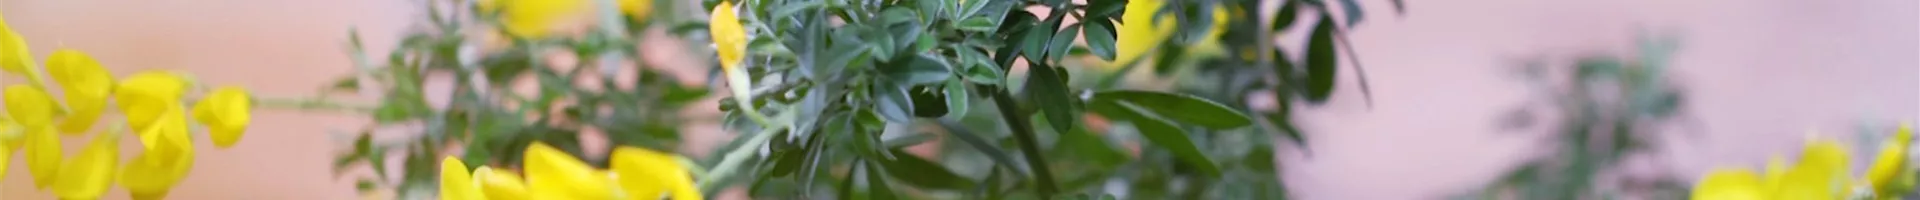 Ginster - Einpflanzen im Garten (thumbnail).jpg